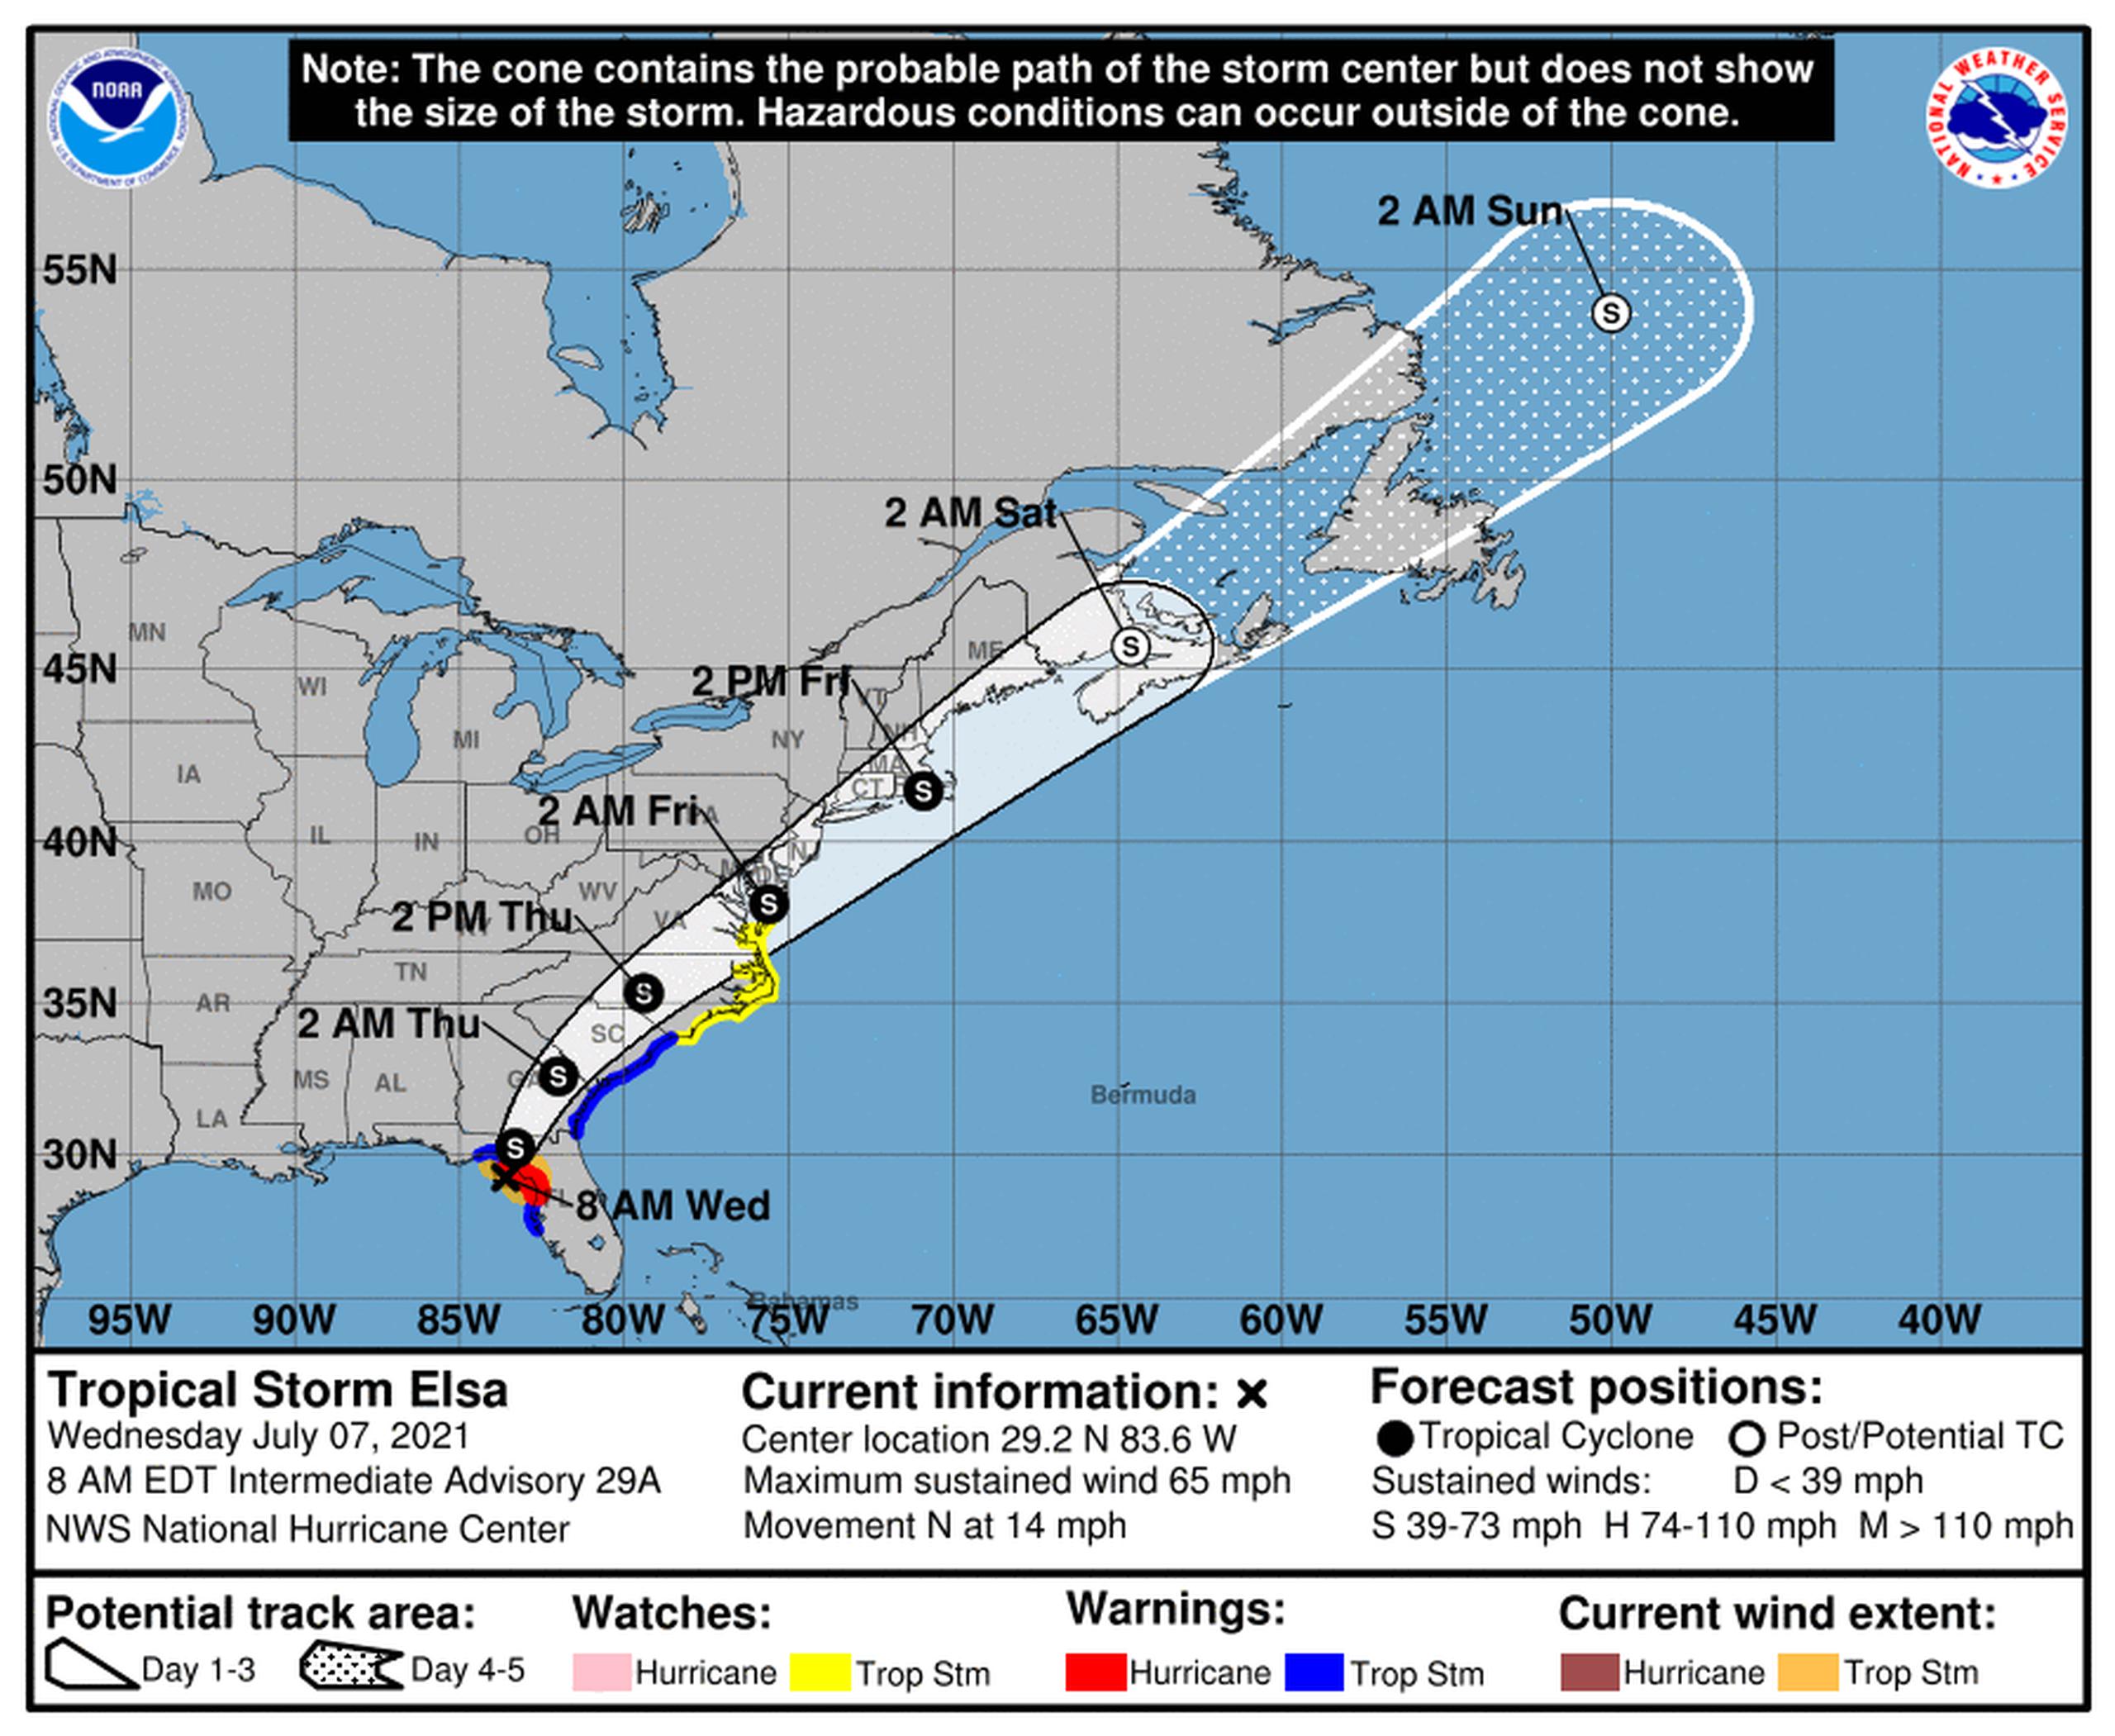 Pronóstico de la tormenta tropical Elsa emitido a las 8:00 de la mañana por el Centro Nacional de Huracanes de los Estados Unidos el 7 de julio de 2021.